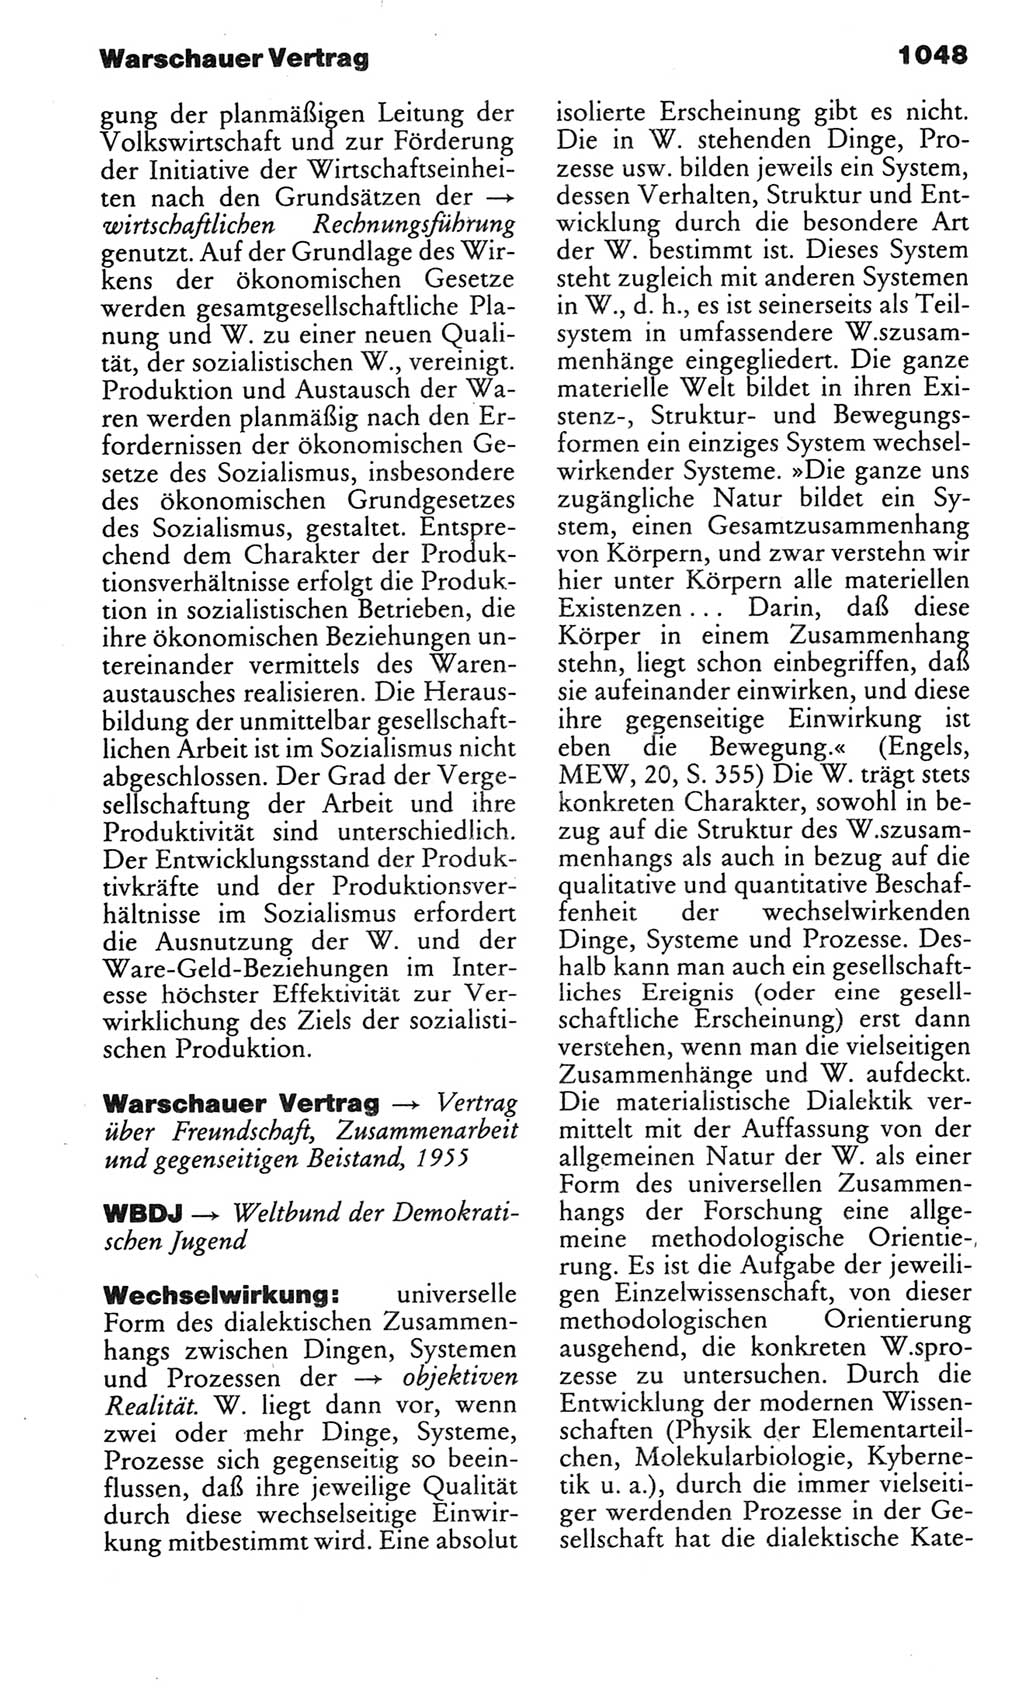 Kleines politisches Wörterbuch [Deutsche Demokratische Republik (DDR)] 1983, Seite 1048 (Kl. pol. Wb. DDR 1983, S. 1048)